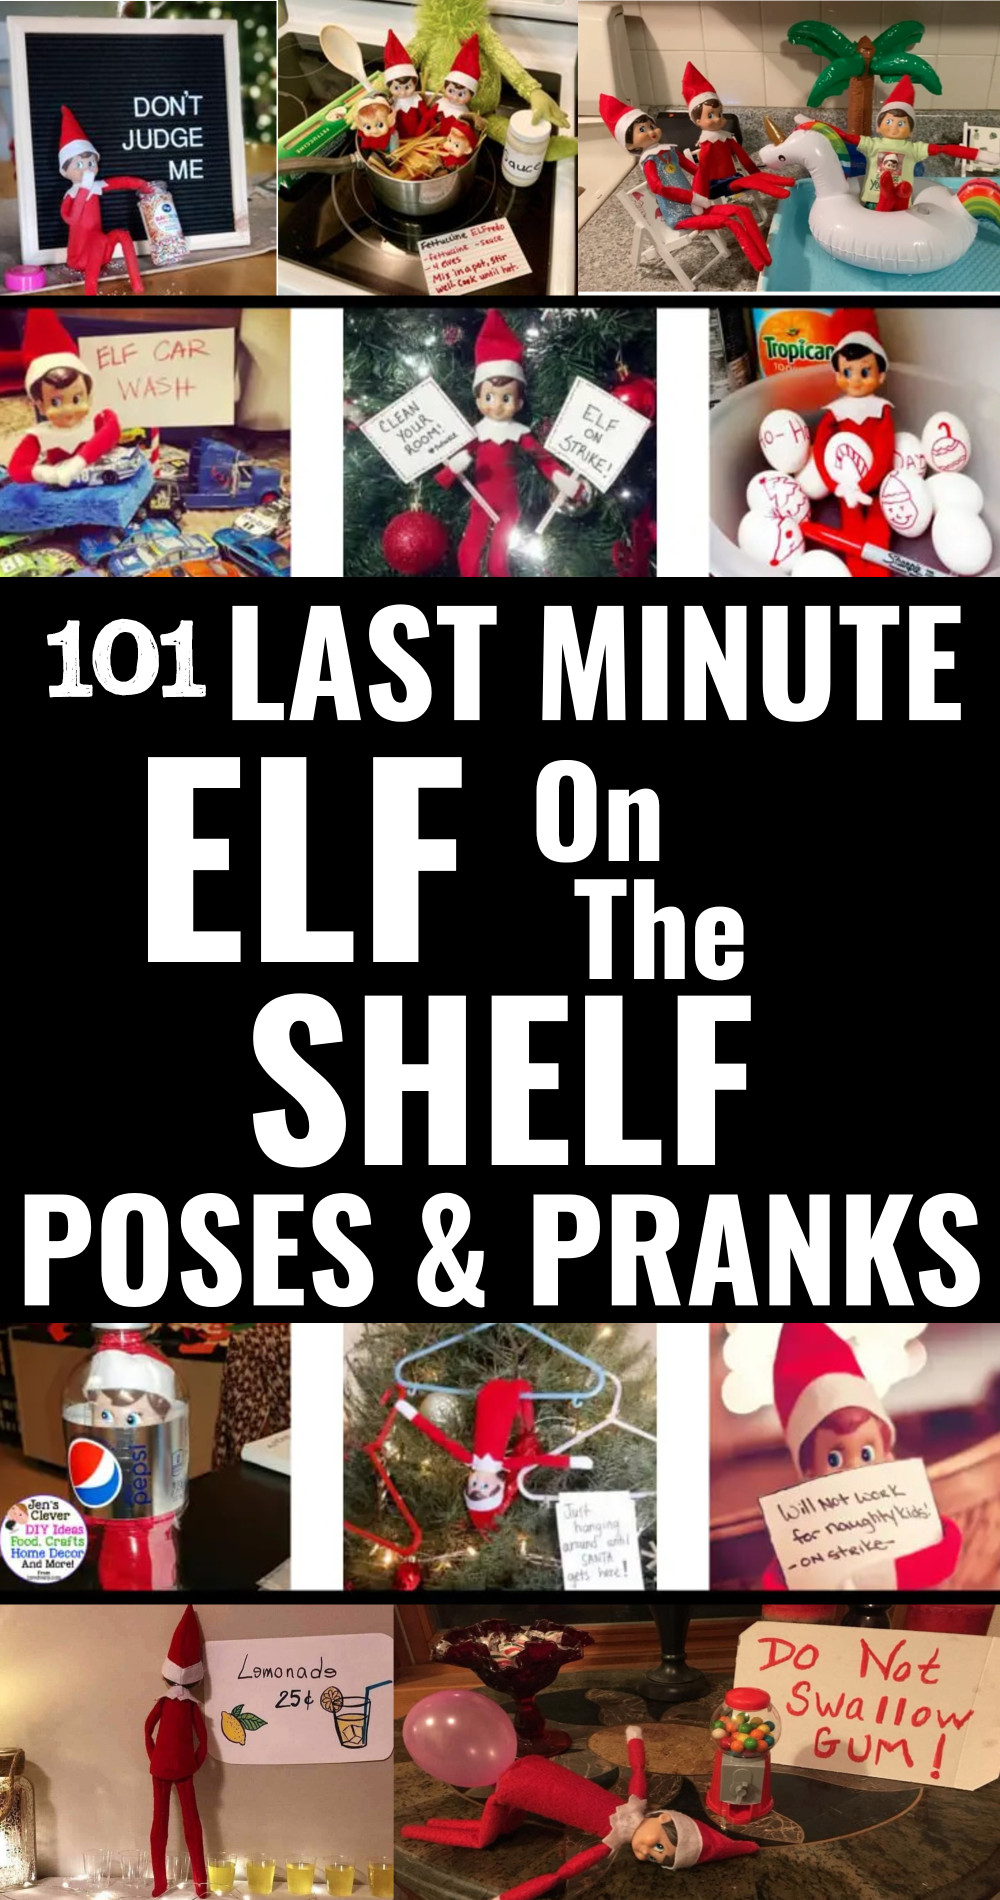 101 last minute elf on the shelf poses, pranks and ideas